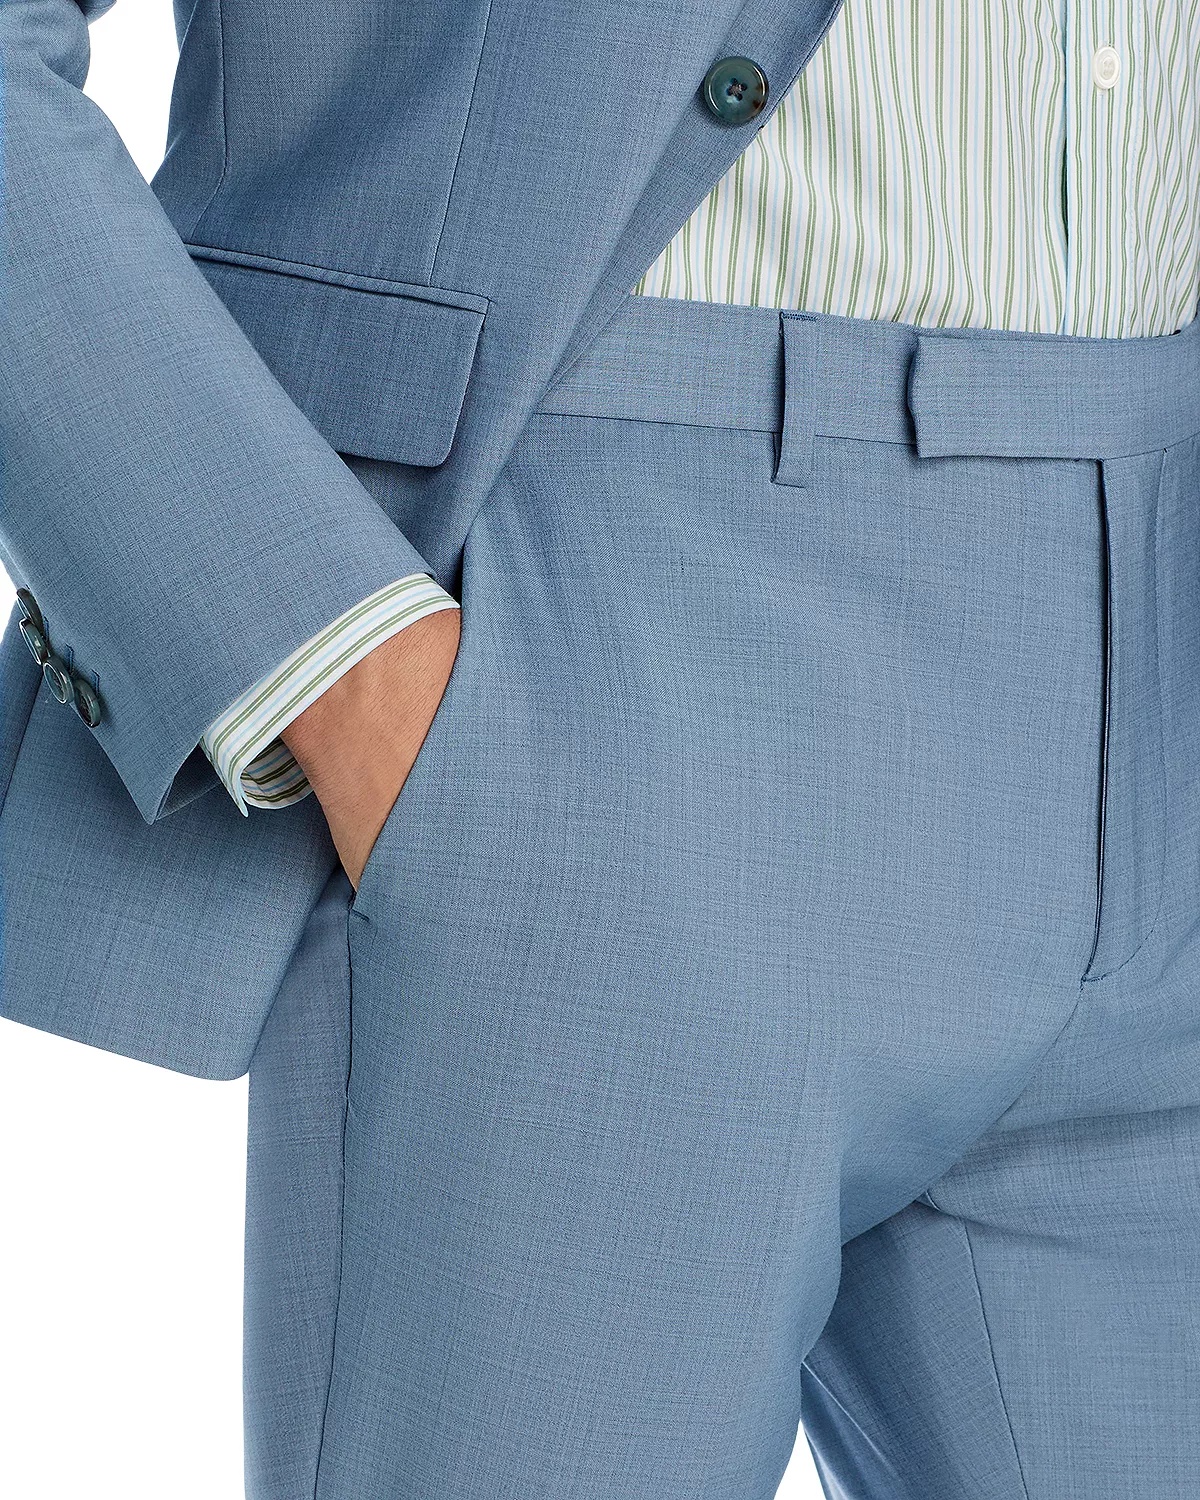 Soho Melange Solid Extra Slim Fit Suit - 7